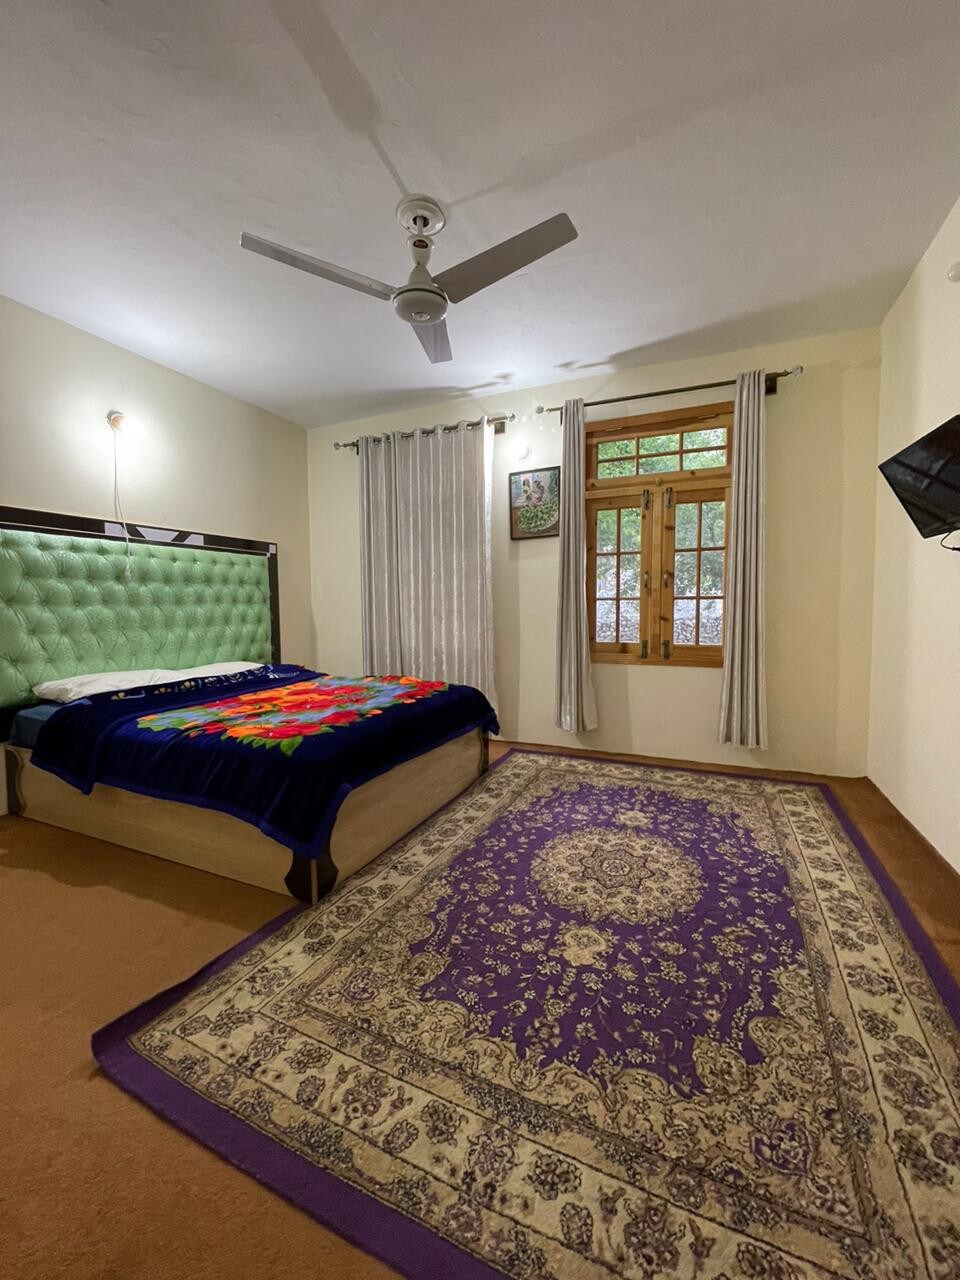 Unforgettable Hotel Hunza valley